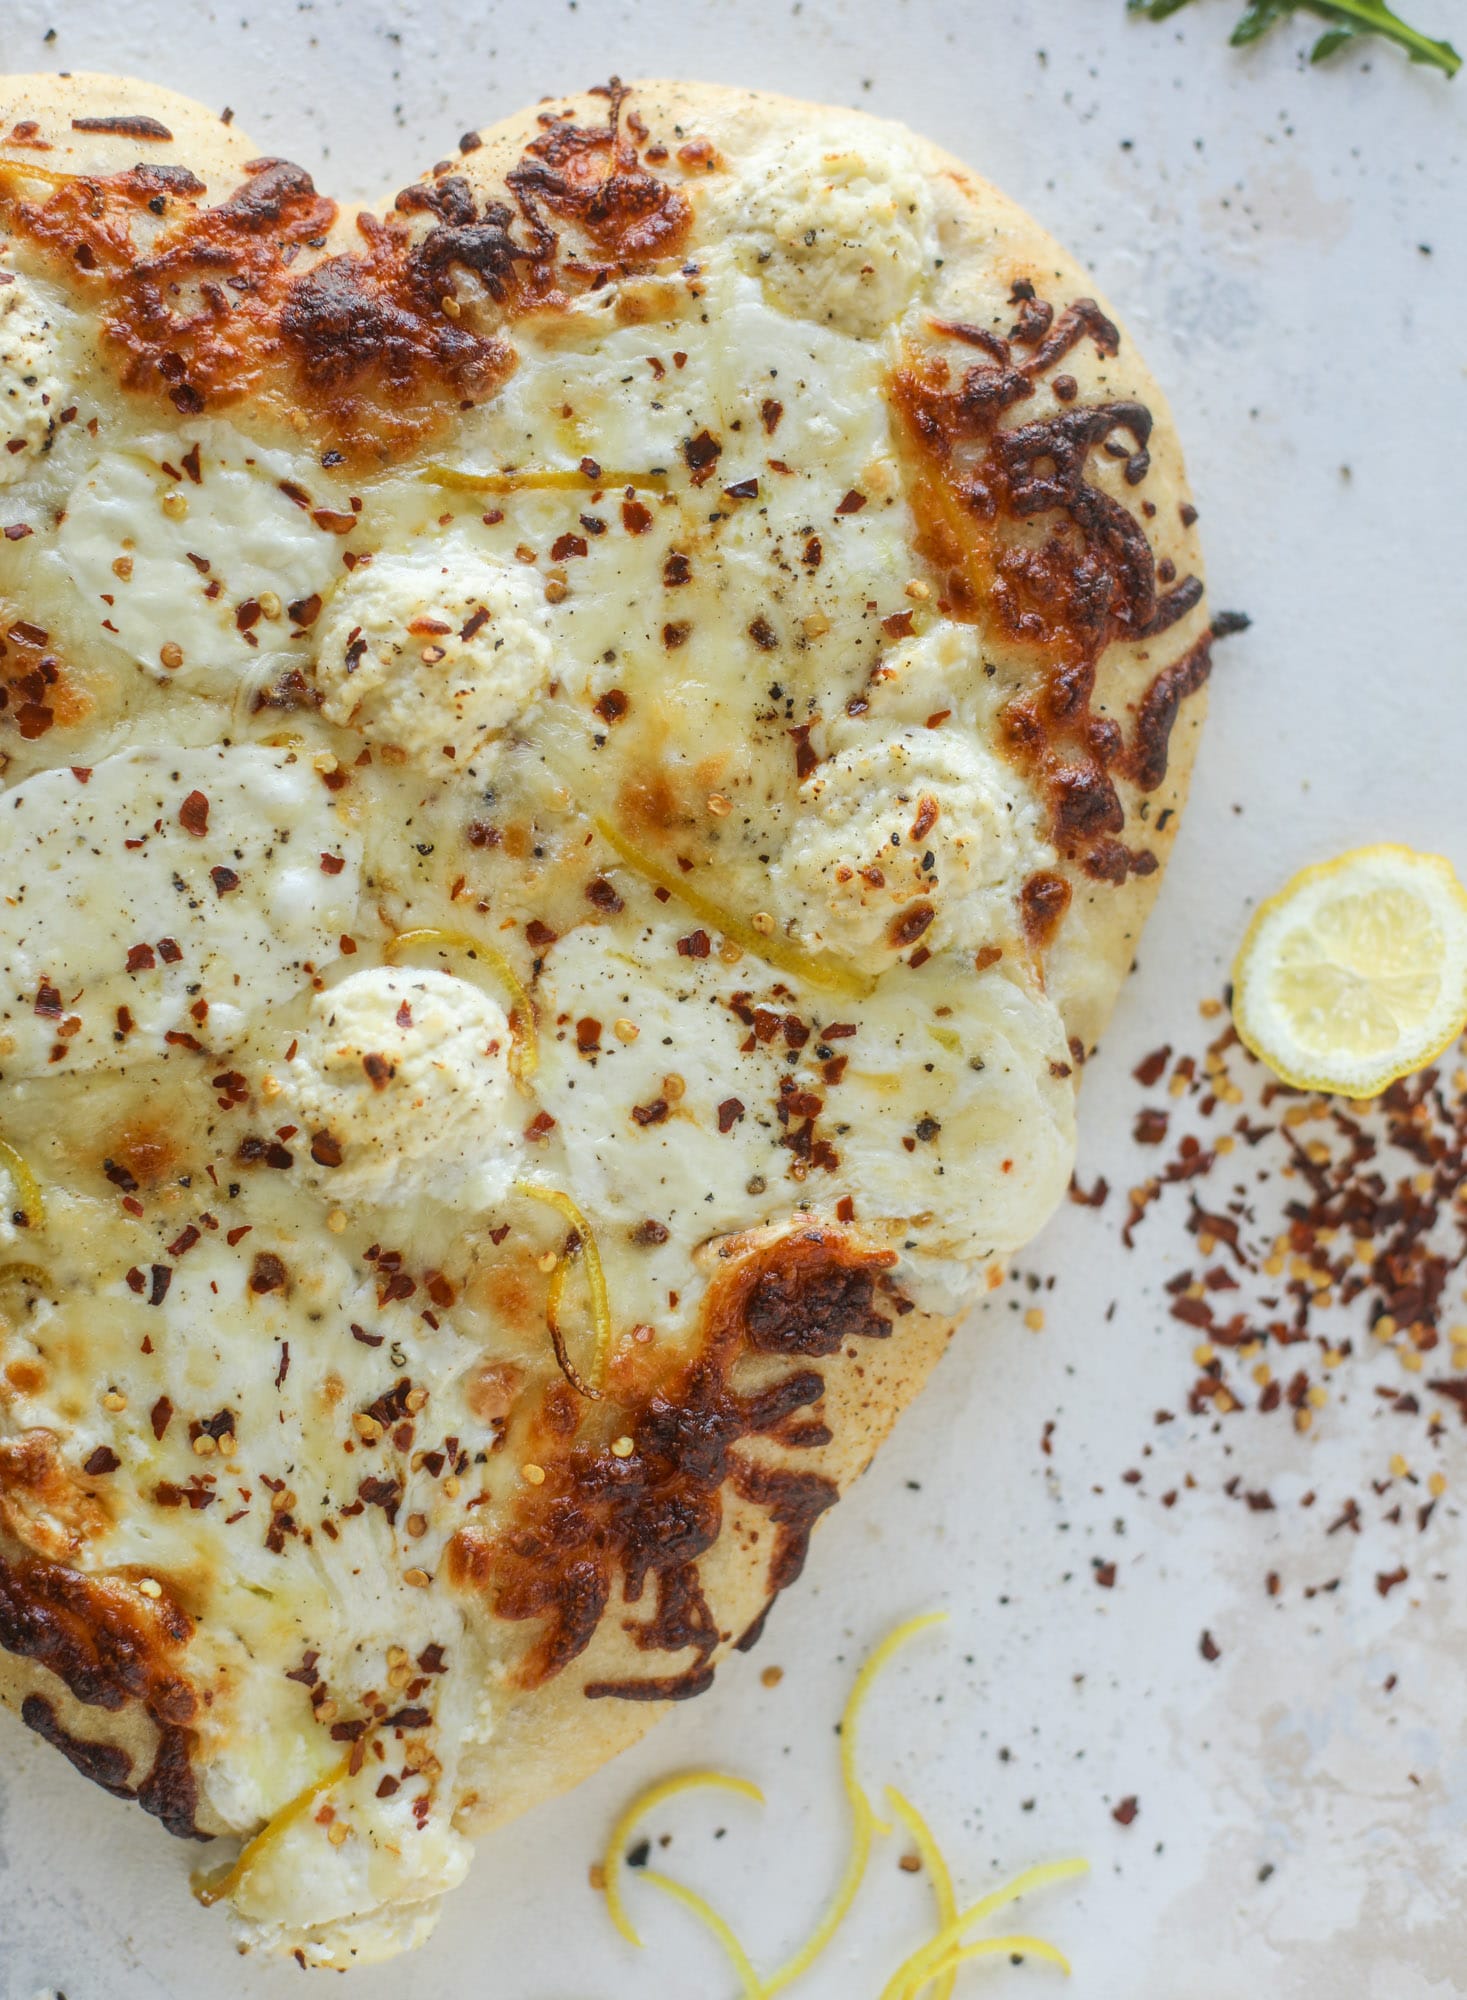 Best White Pizza Recipe - Our Favorite White Pizza Recipe